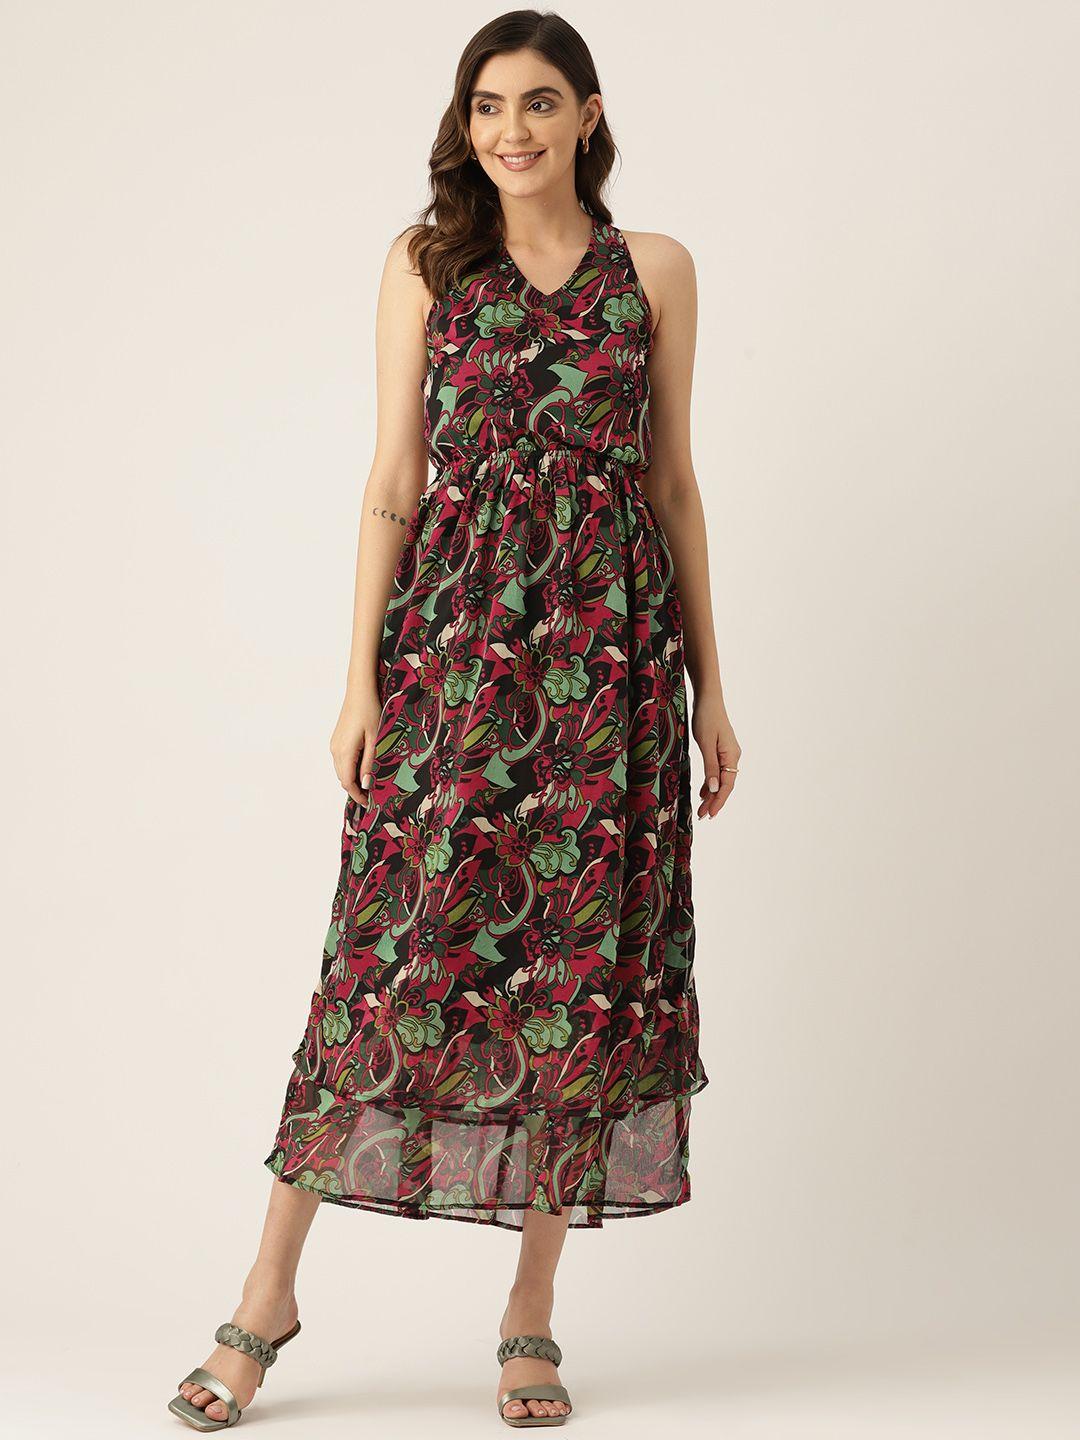 label regalia green & maroon floral print chiffon a-line maxi dress